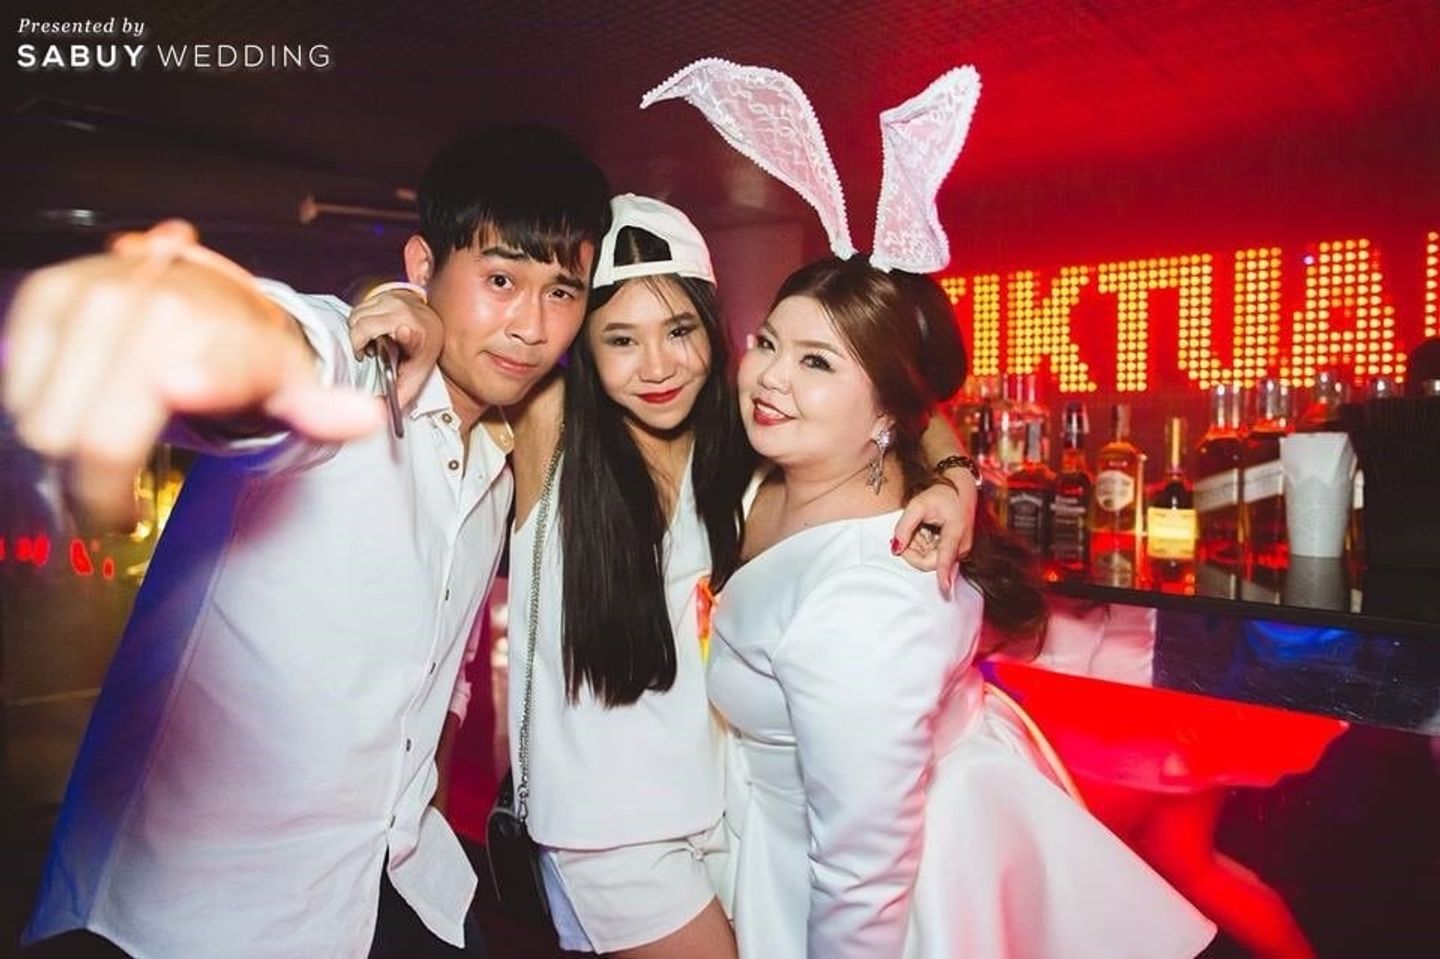 อาฟเตอร์ปาร์ตี้ รีวิวงานแต่งปาร์ตี้แซ่บซี๊ด ปิดผับรับแสงนีออนไลท์ในธีม Sneaker @The Peninsula Bangkok